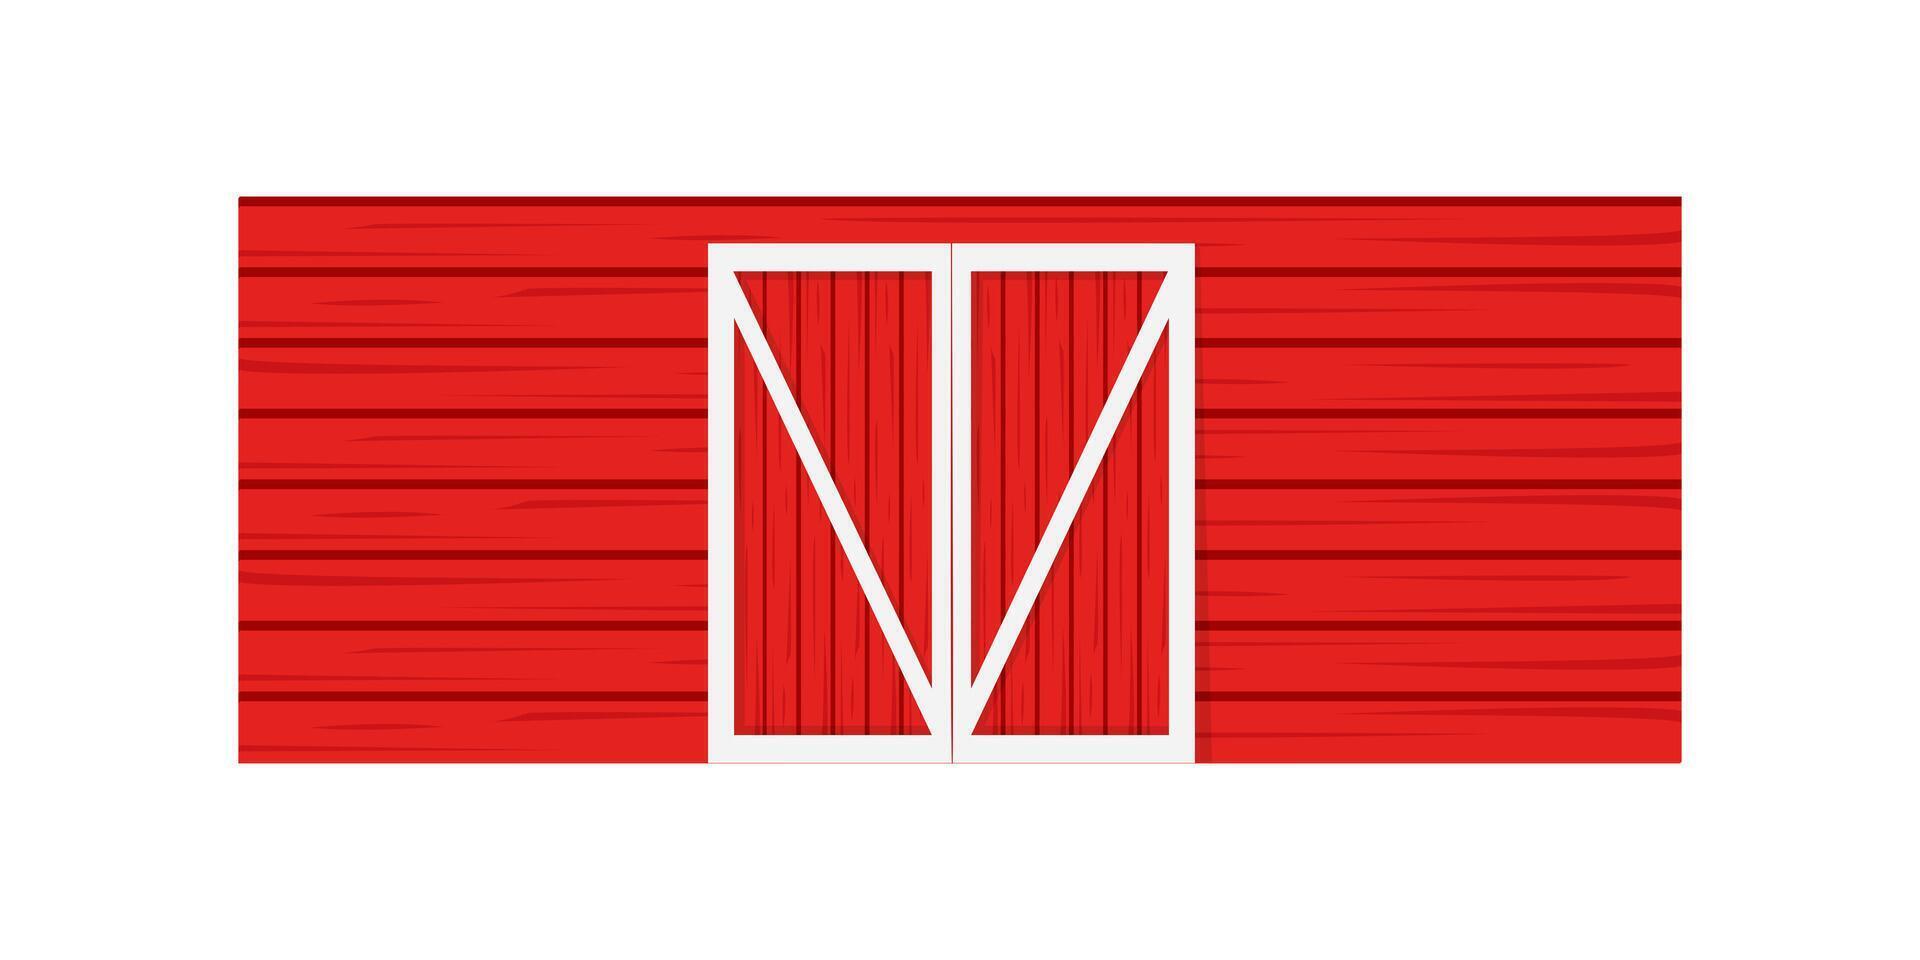 röd trä- dörr på ladugård vägg. främre se. element av amerikan bruka lager byggnad vektor